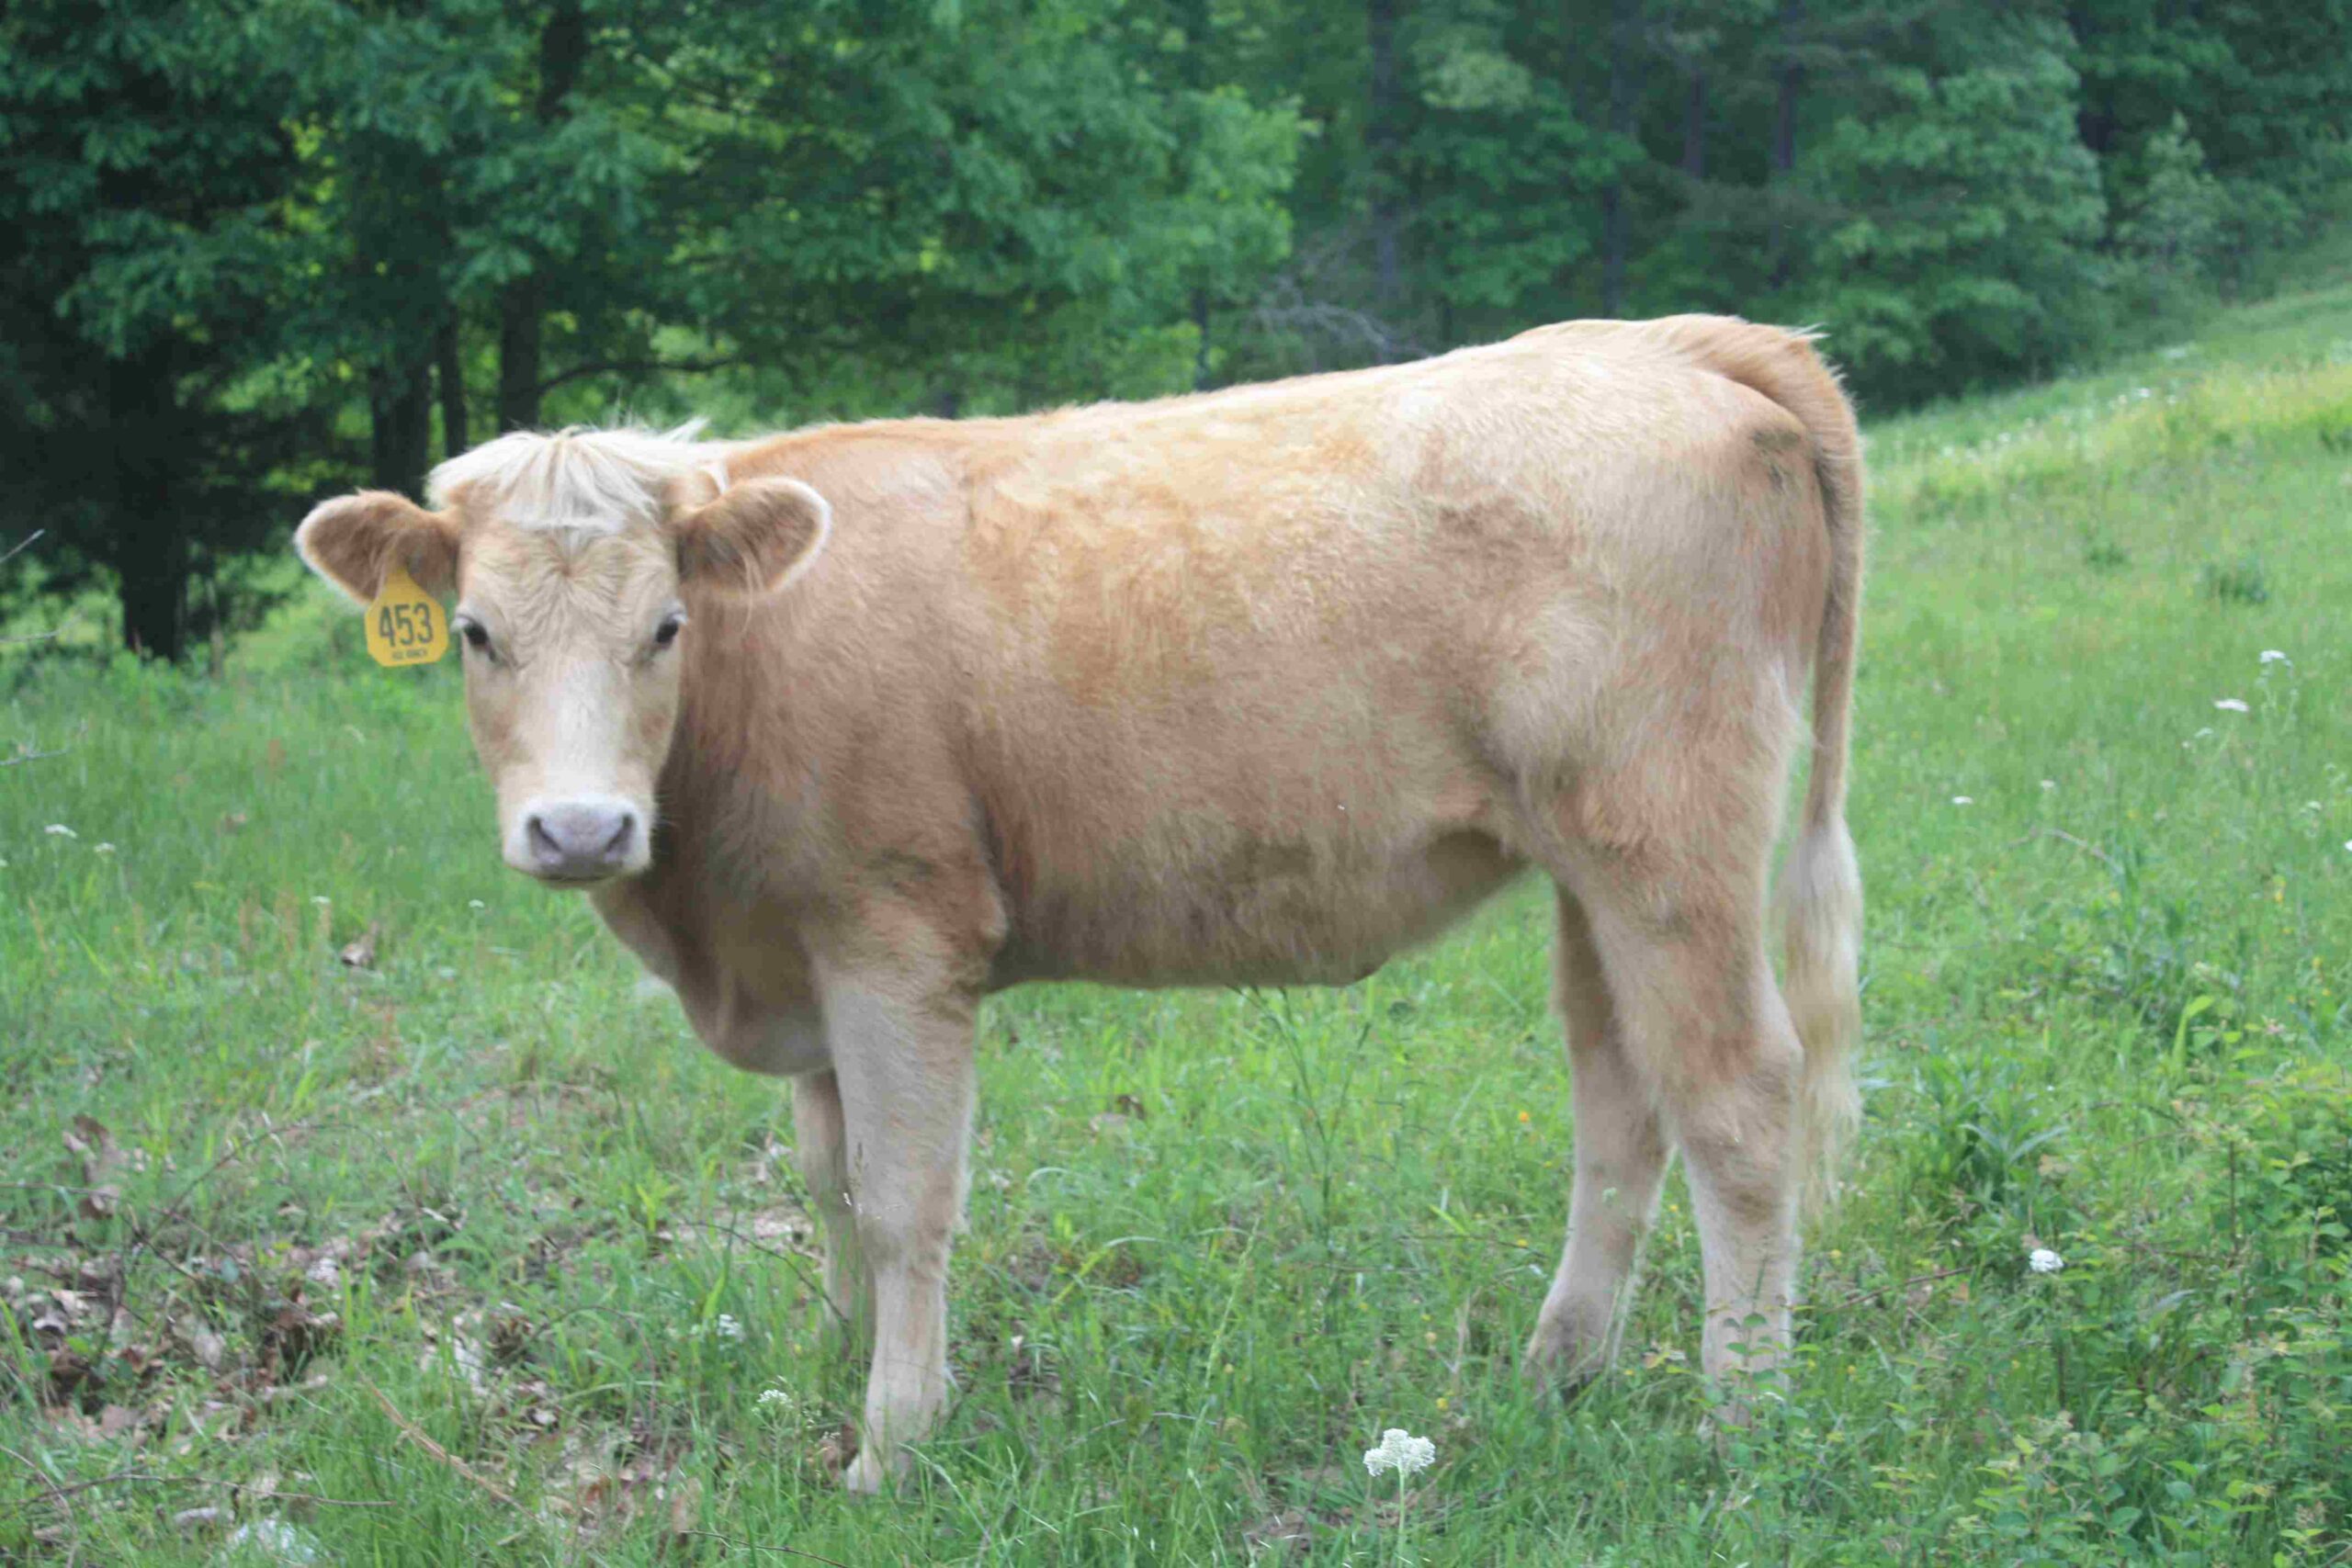 Heifer #453 Purebred